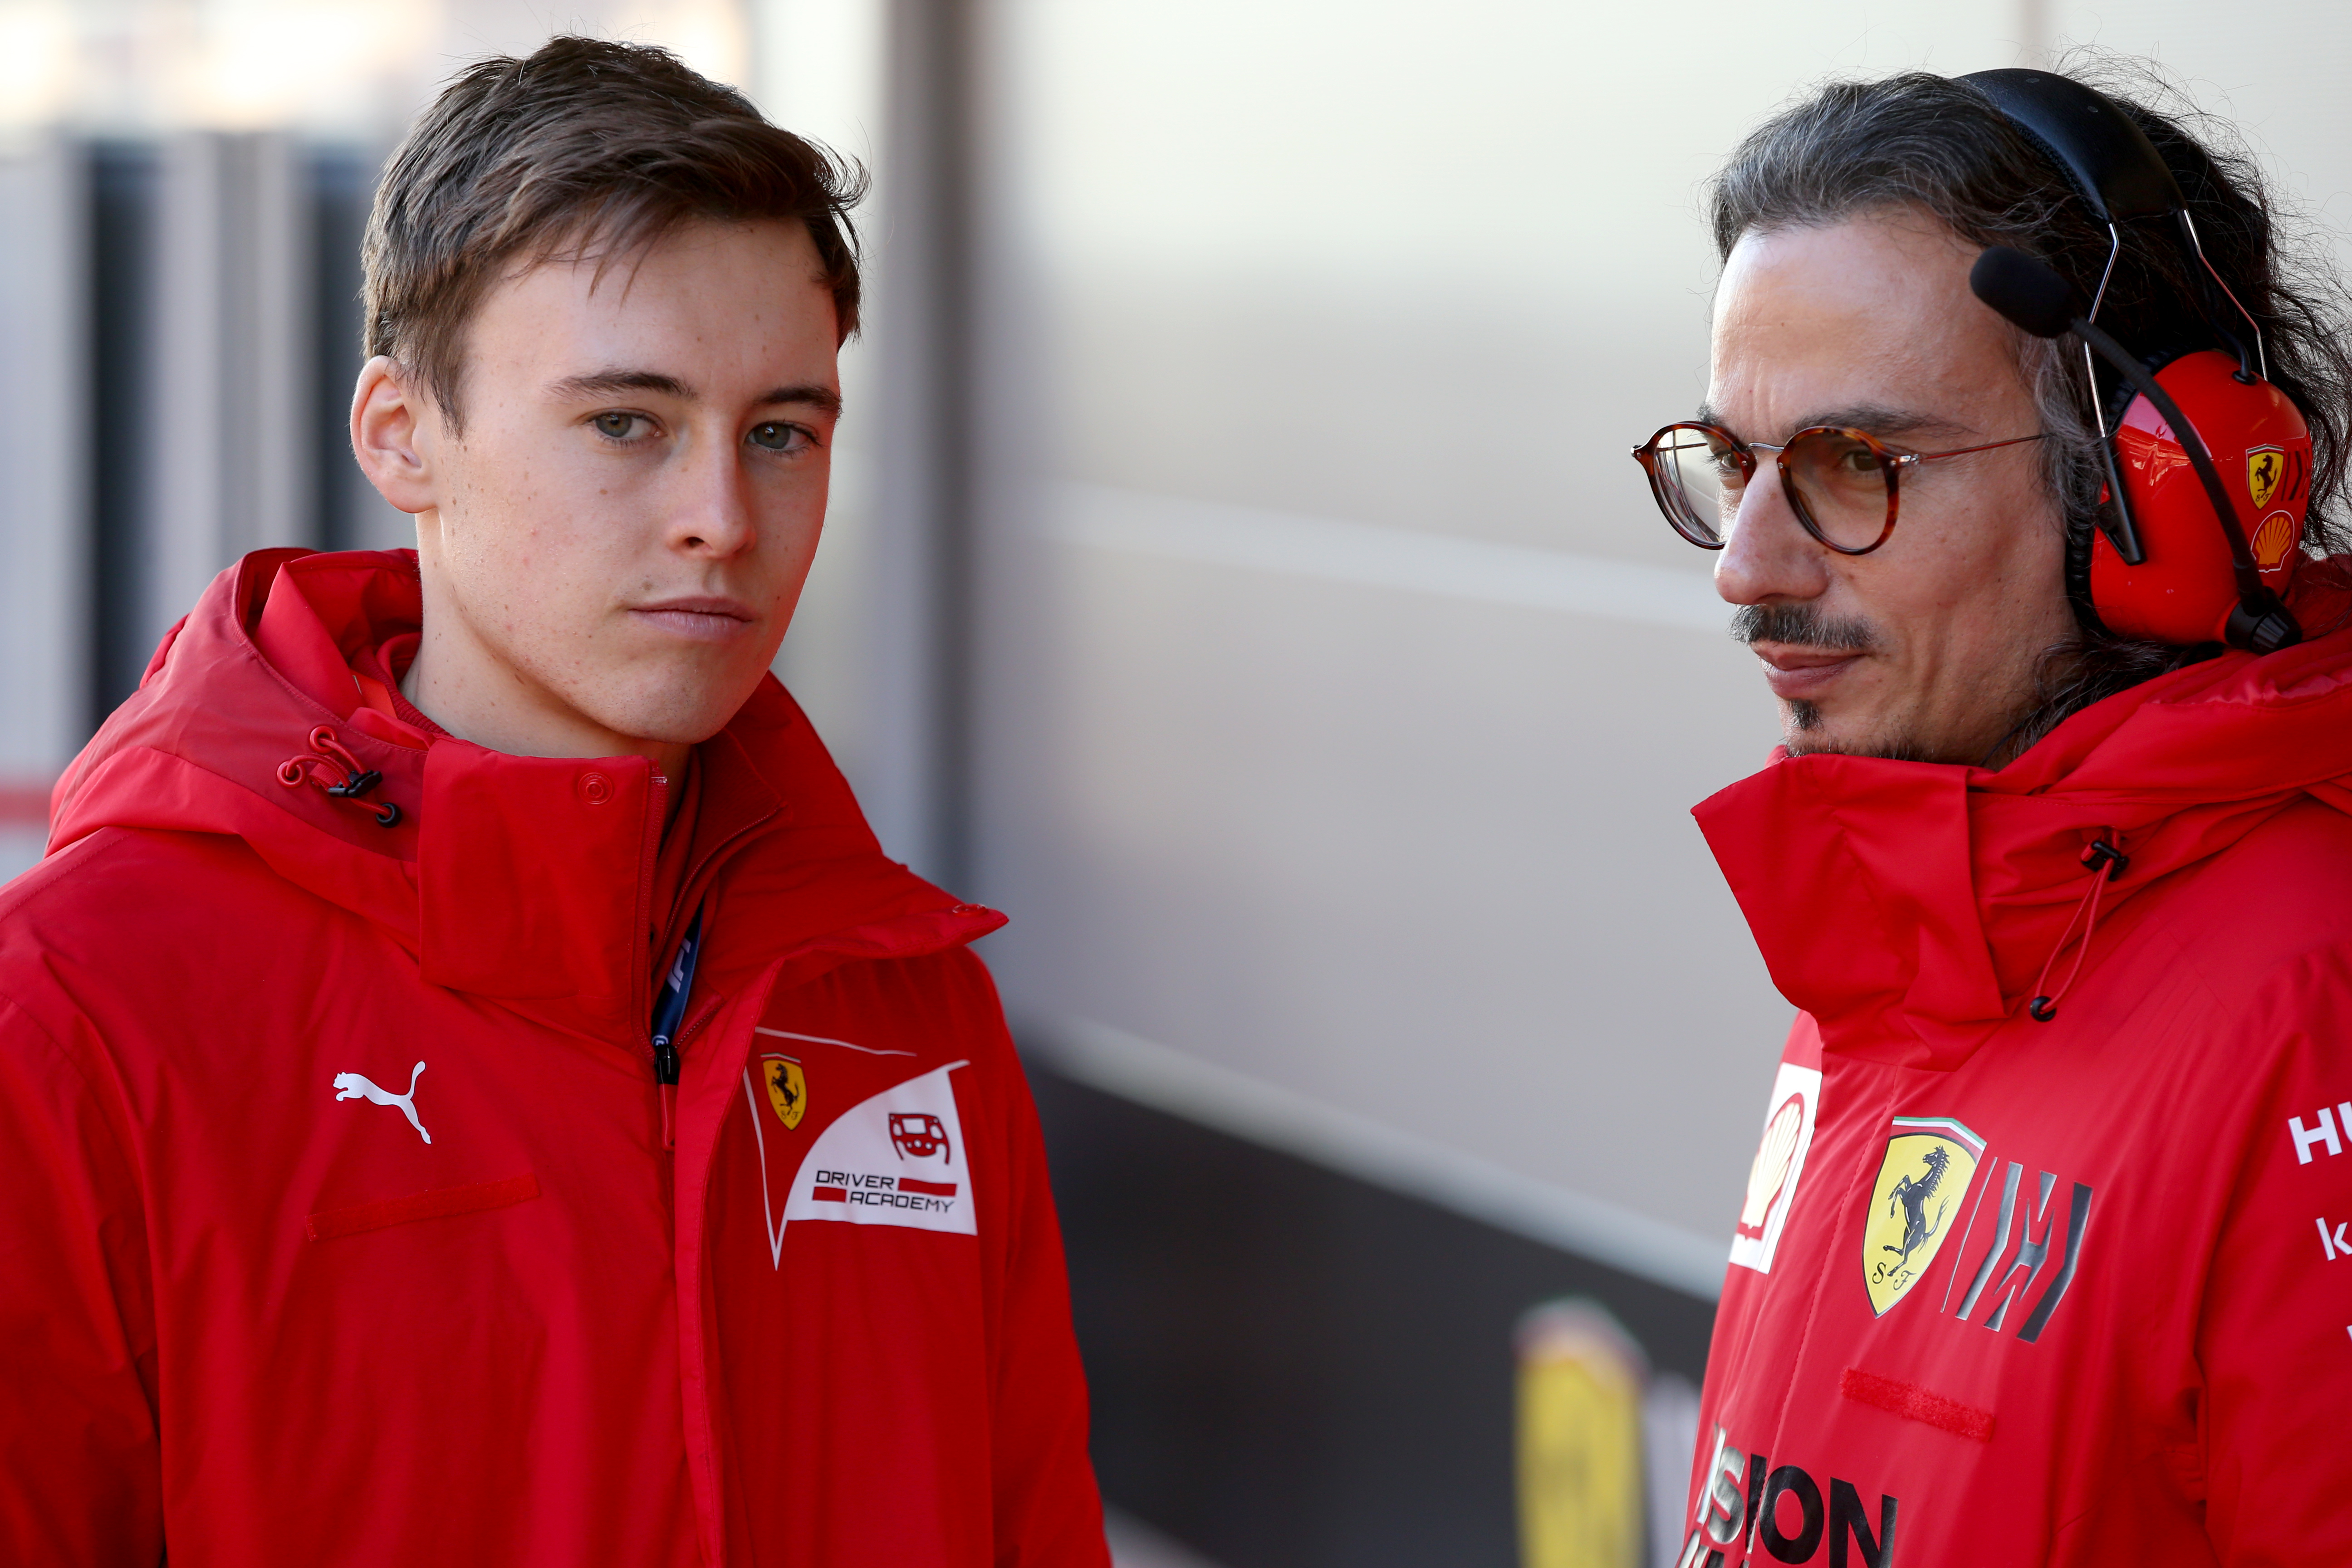 Ferrari protege to race alongside Kiwi hero